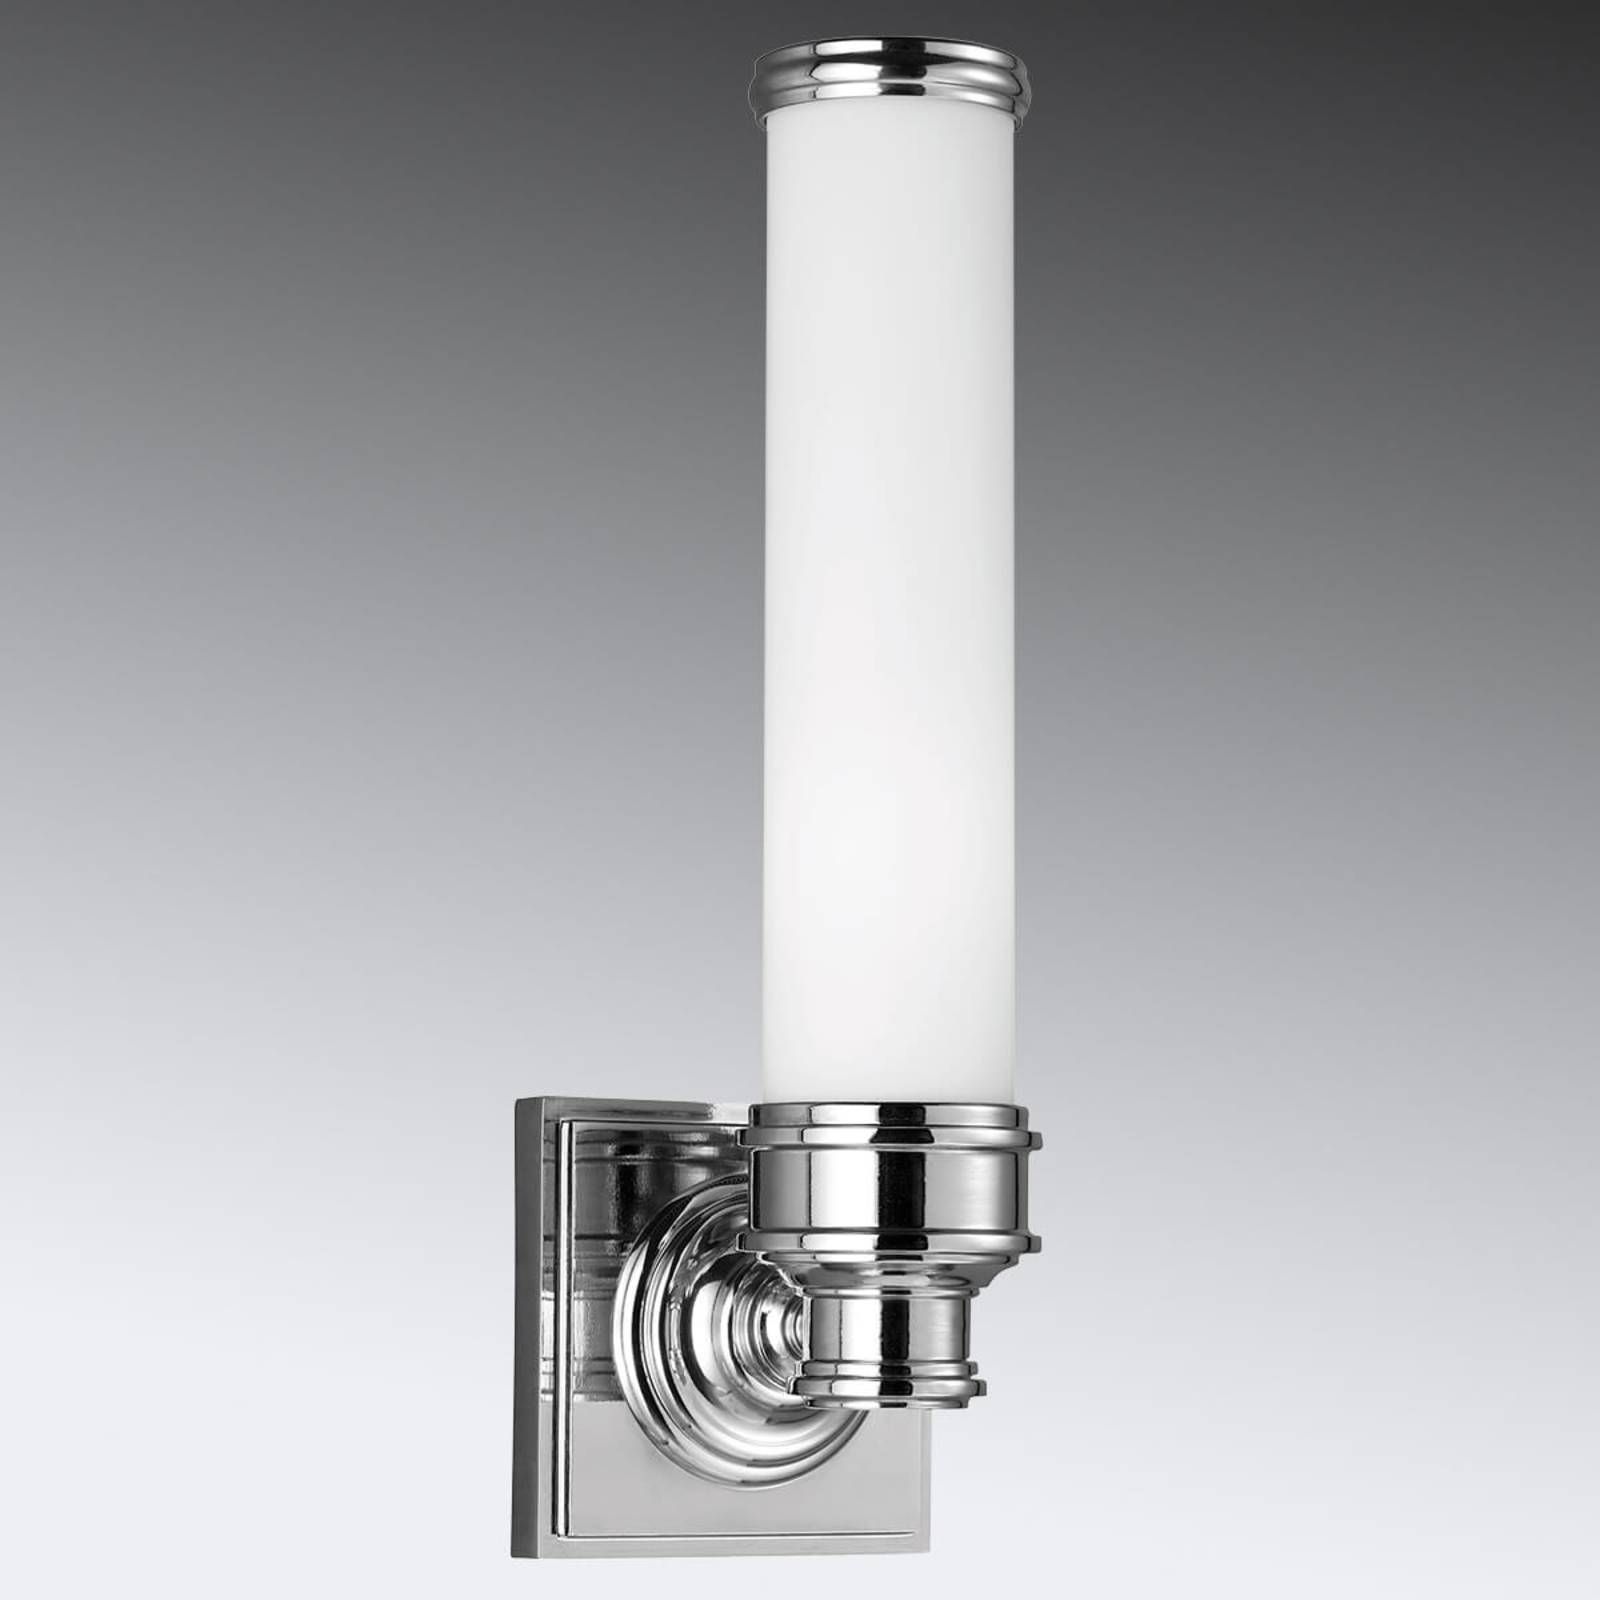 FEISS Nástenné LED svietidlo Payne do kúpeľne, Kúpeľňa, kov, sklo, G9, 3.5W, L: 11.4 cm, K: 36.2cm